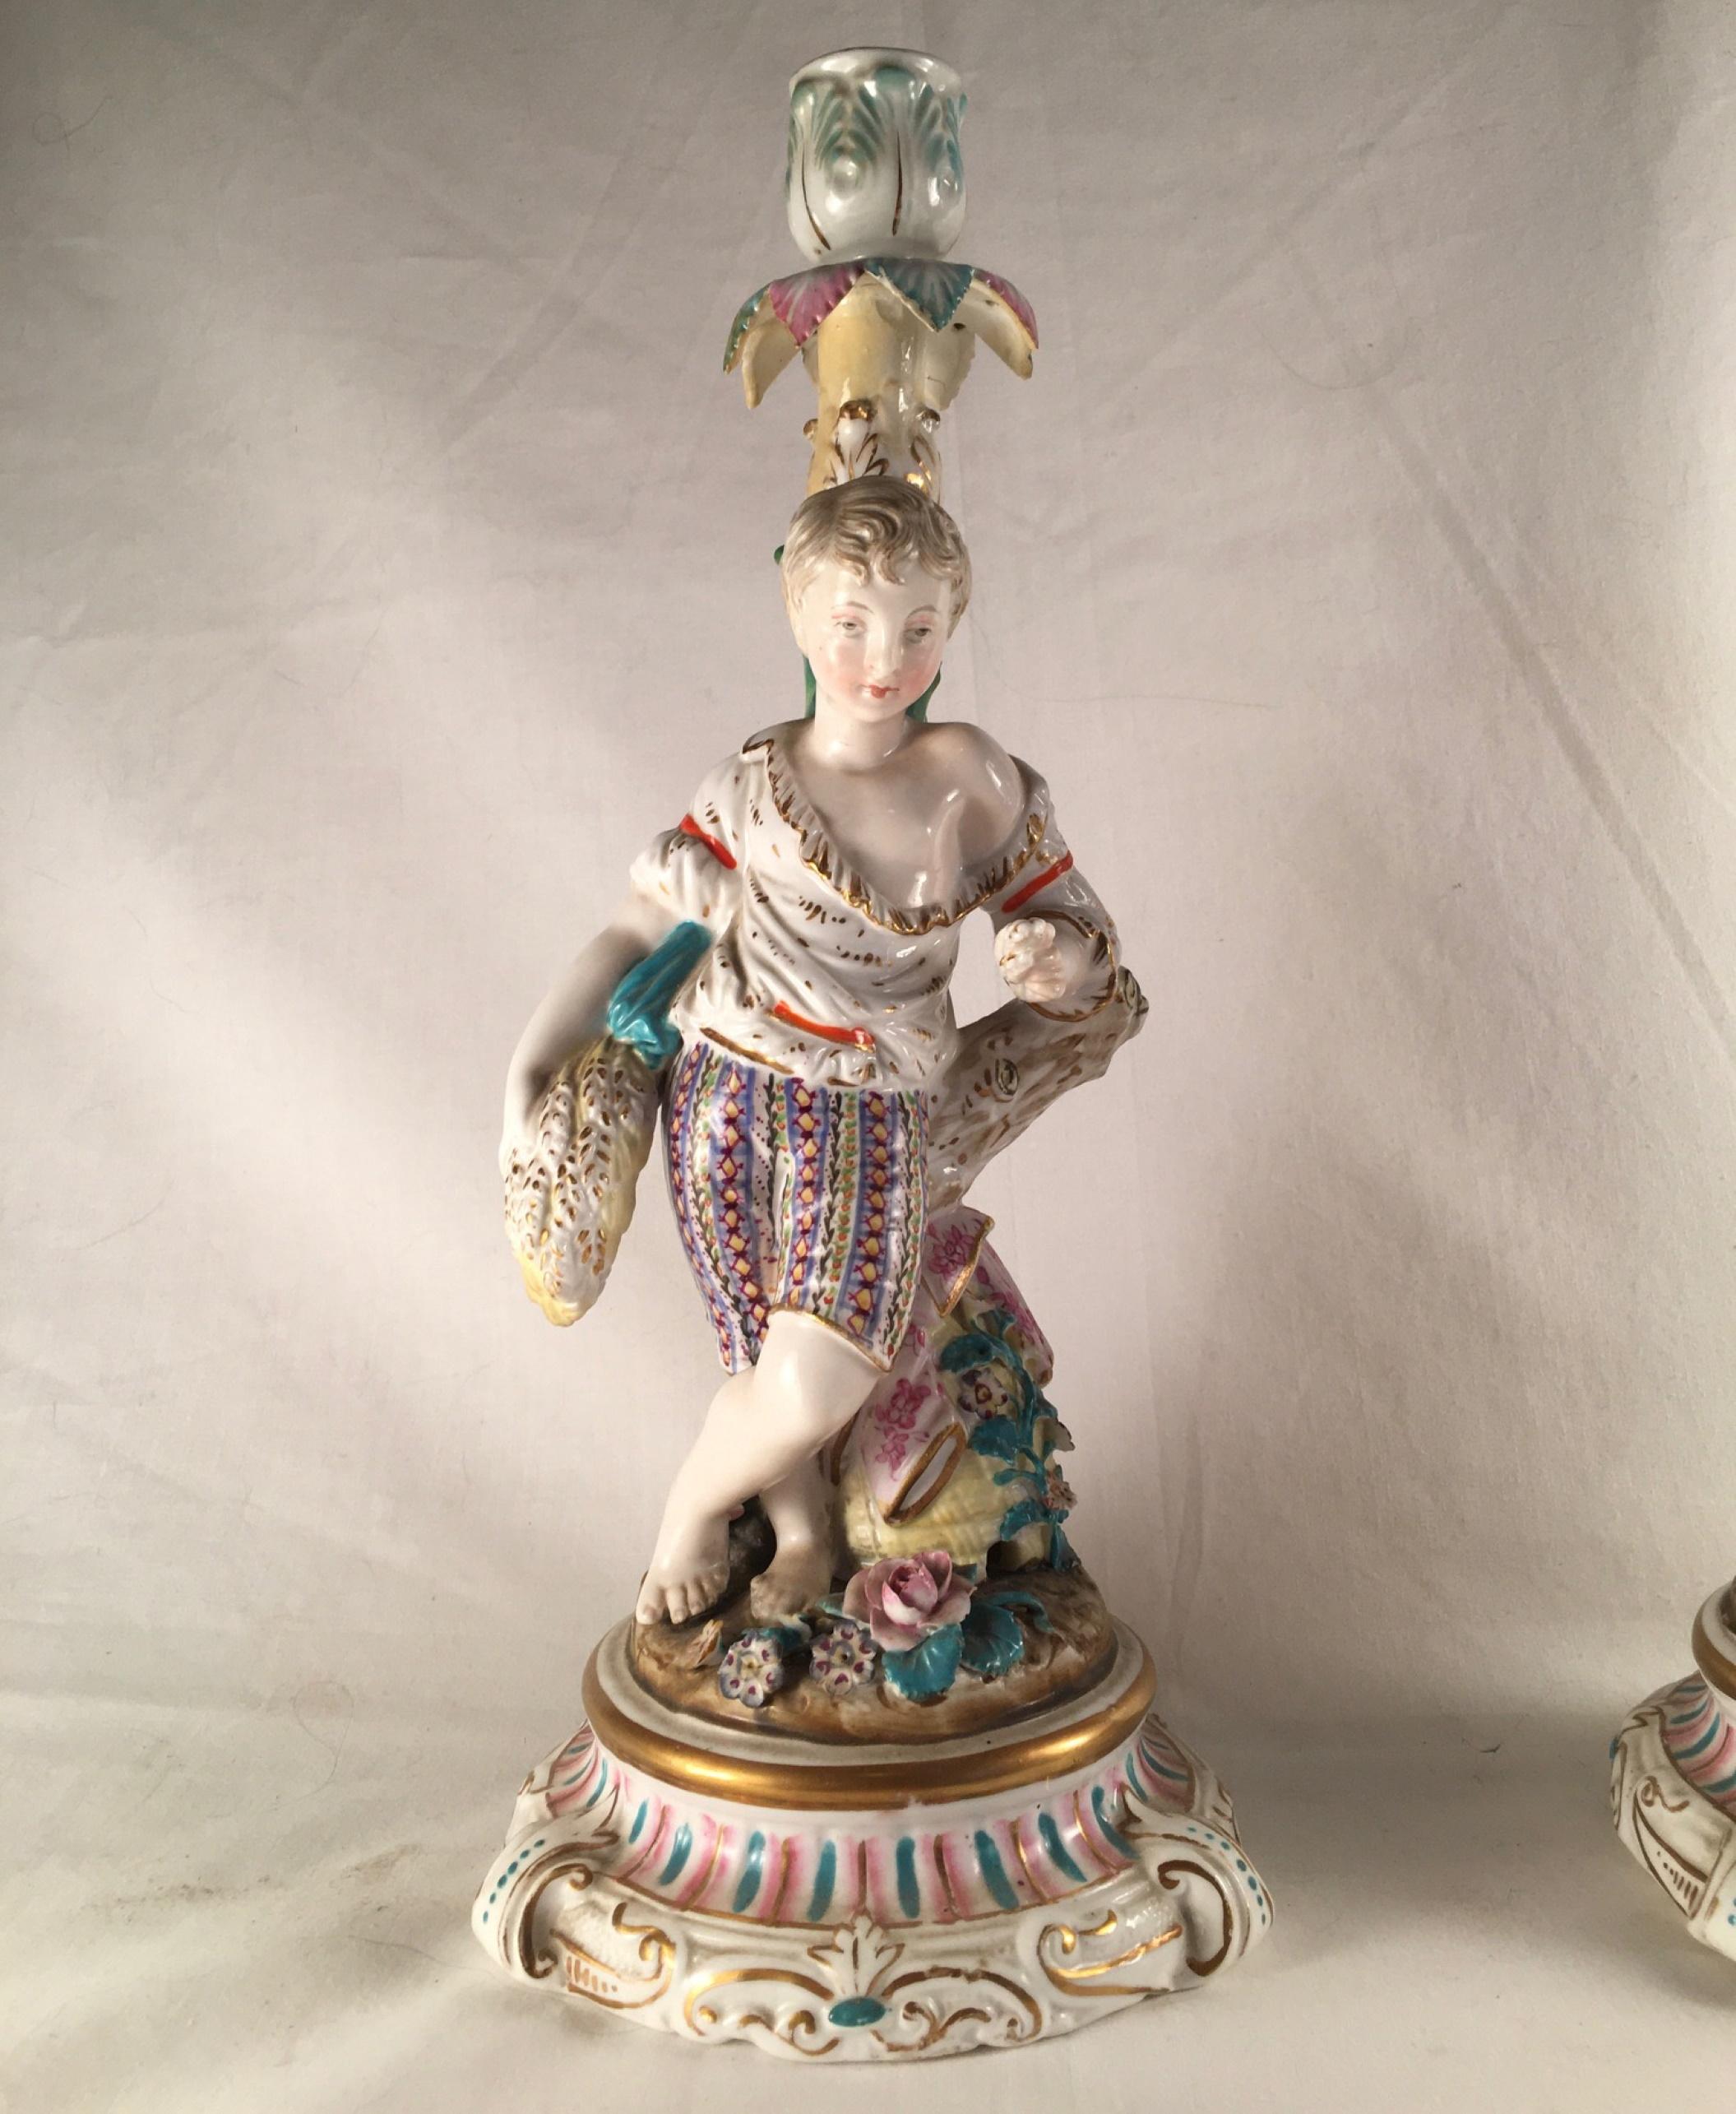 Paar figurale Kerzenhalter aus Porzellan im Rokoko-Stil, ca. 1850

Dieses Paar großer und schöner Kerzenständer ist mit exquisiten Details handbemalt und mit Gold hervorgehoben. Das Emaille-Dekor hat Meissener Qualität. Die schönen Figuren sind